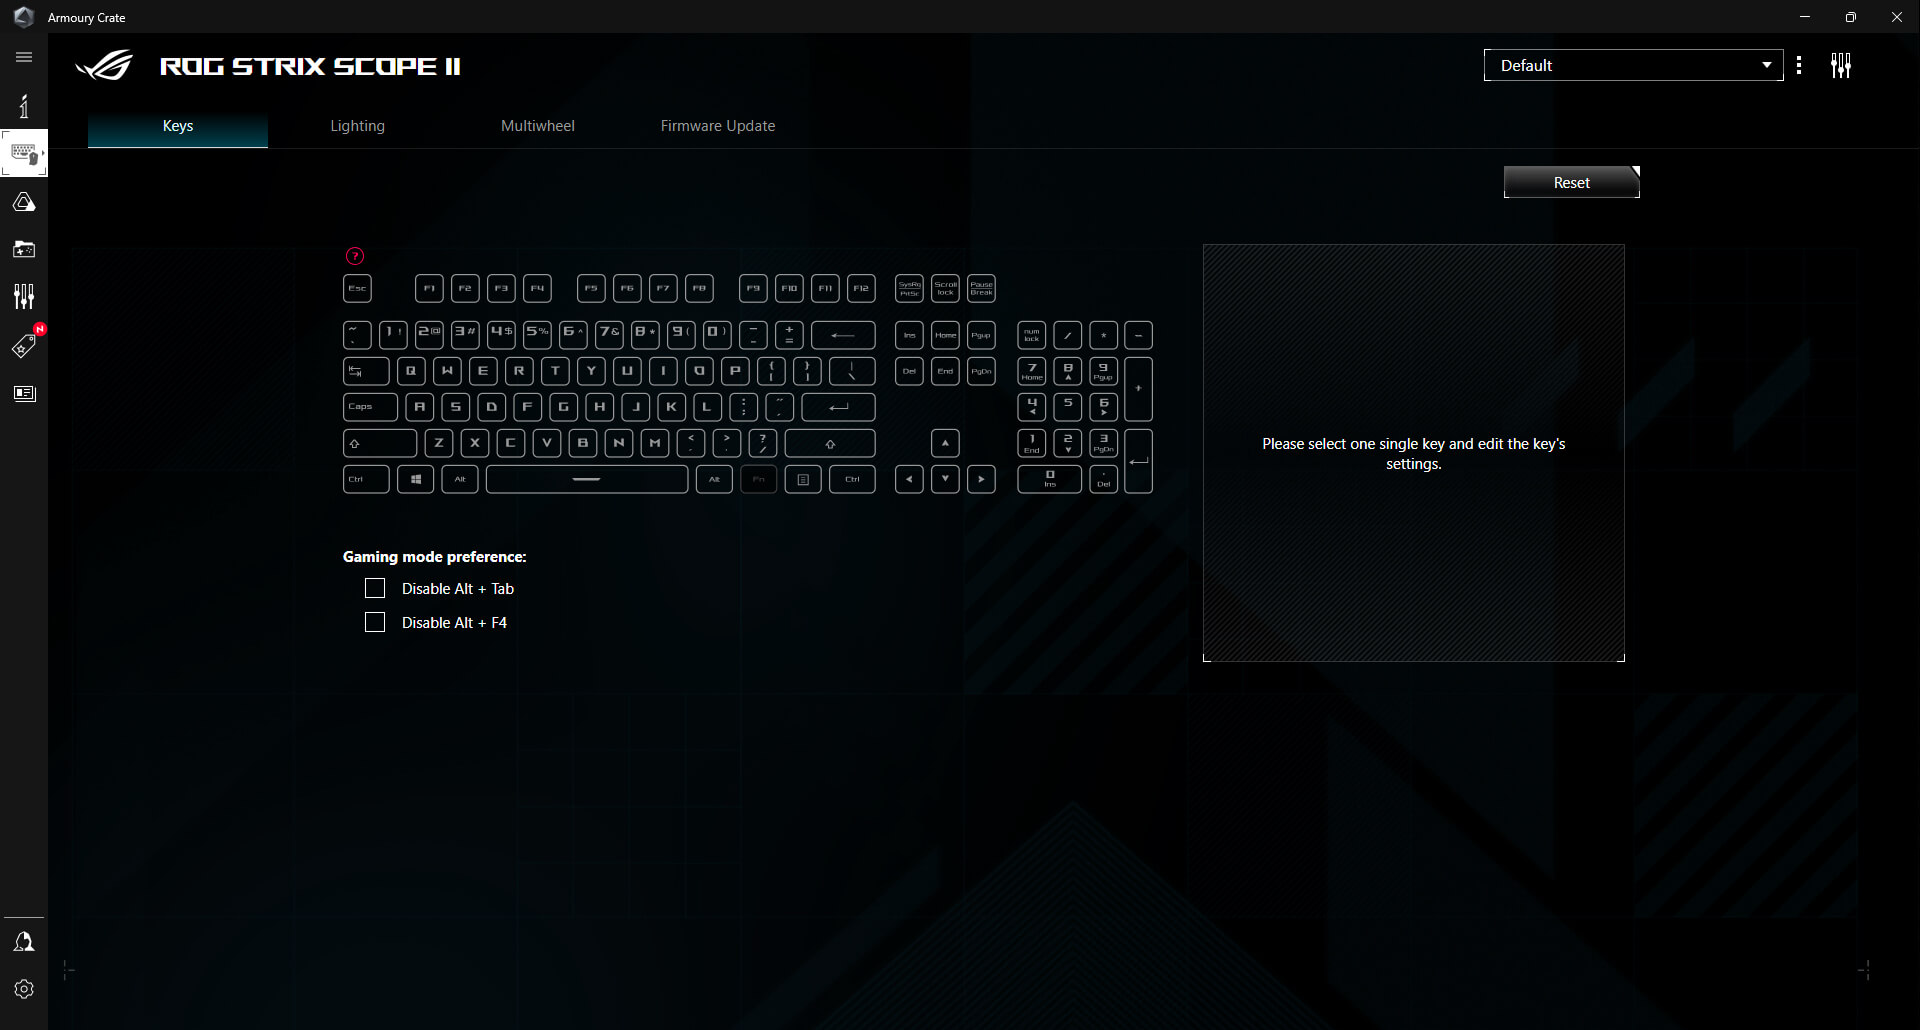 Grafické uživatelské rozhraní Armoury Crate pro klávesnici ROG Strix Scope II